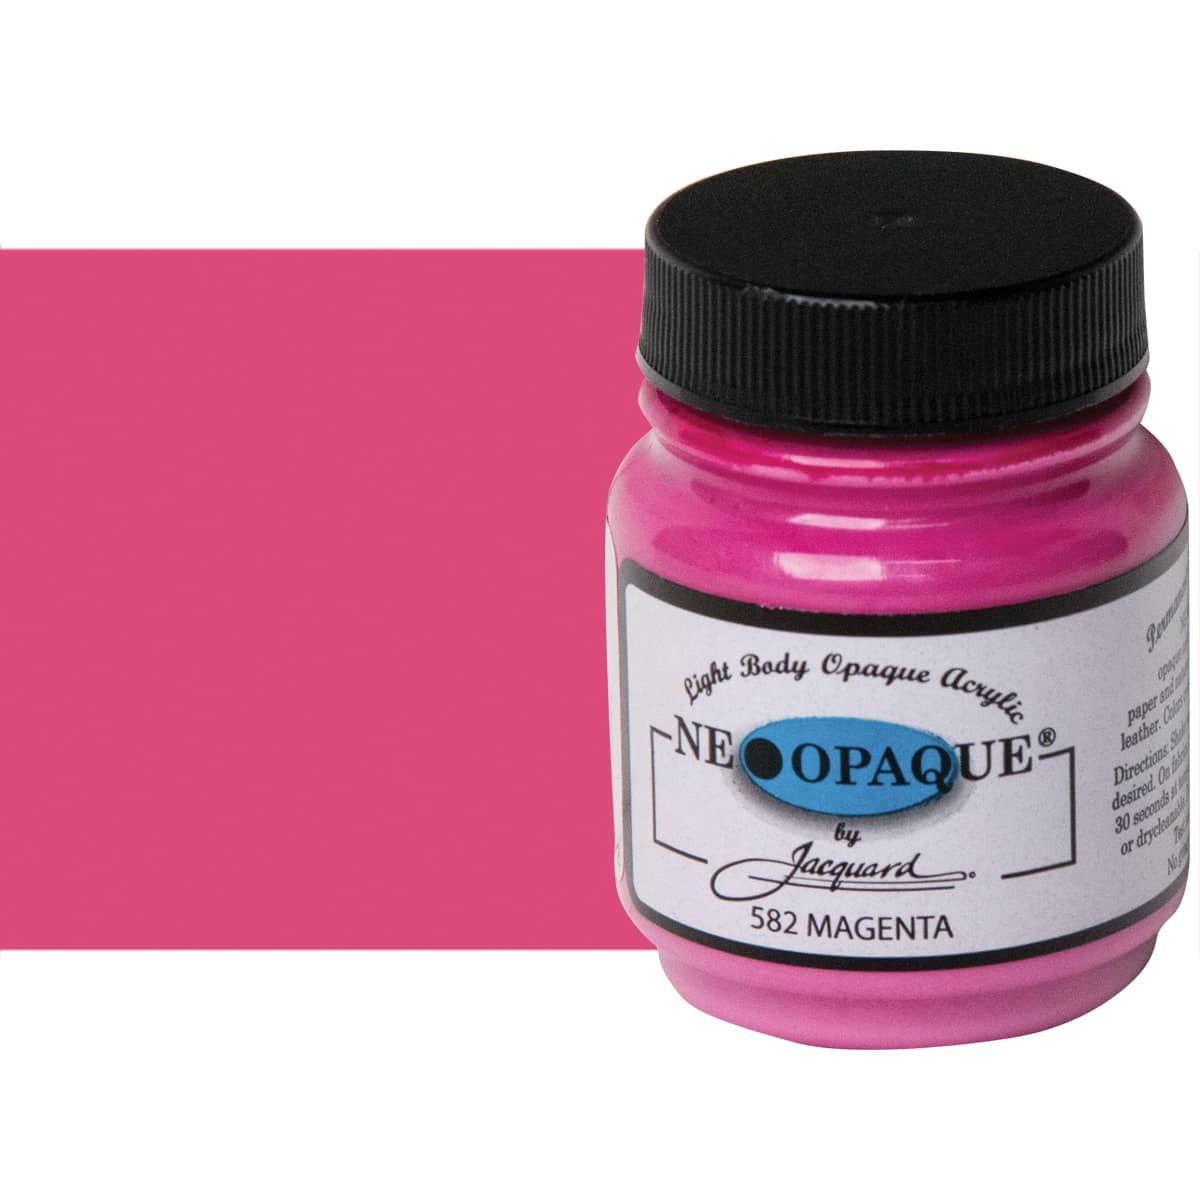 Jacquard Neopaque Fabric Paints - 1 bottle - Choose Color